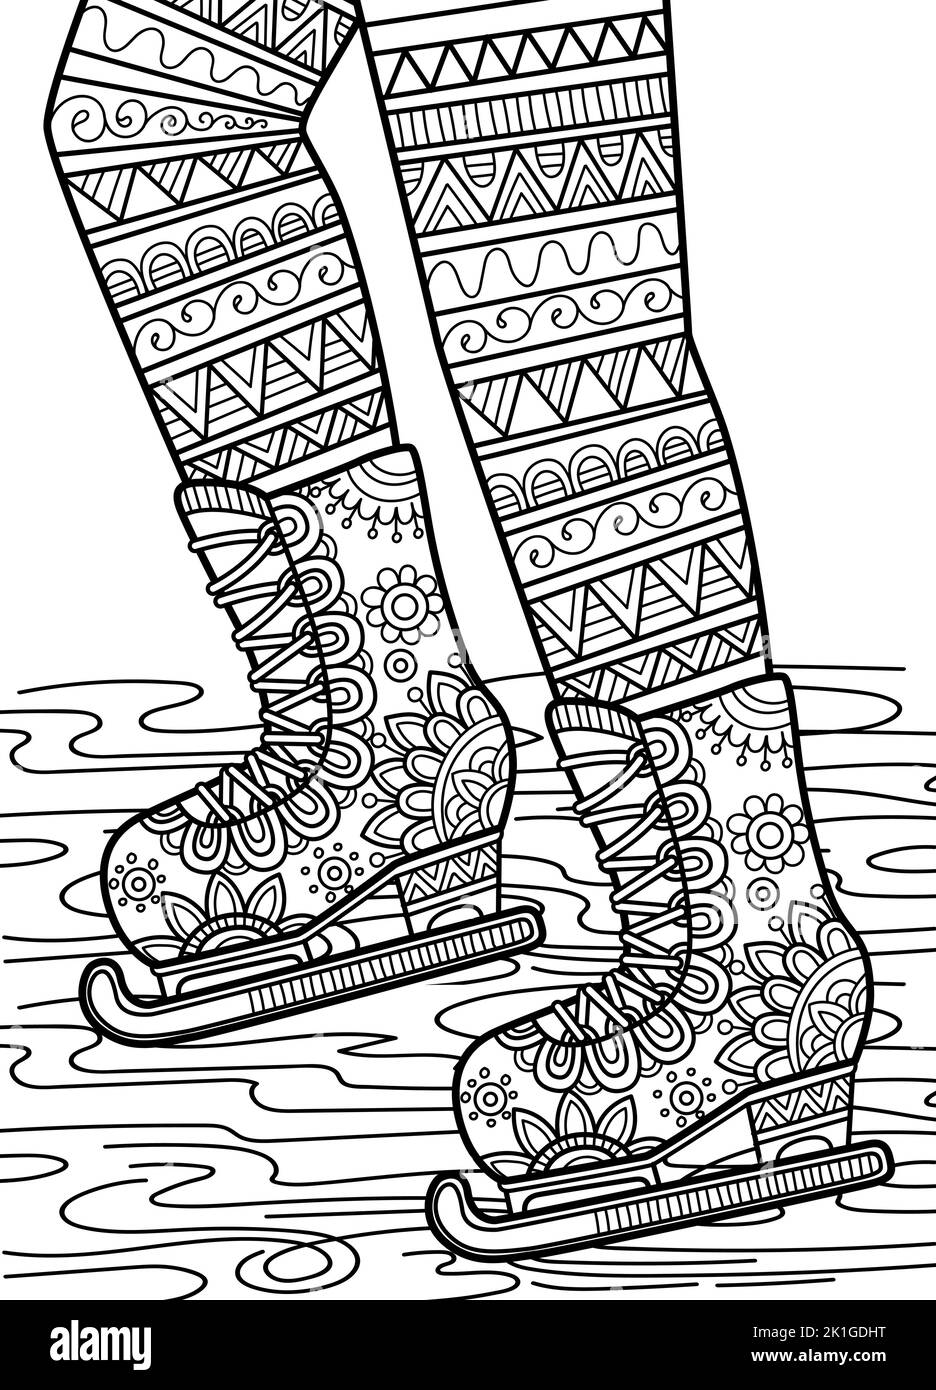 Vektor-Malbuch Seite für Erwachsene. Schwarz-weiße Schlittschuhe im Mandala-Stil Stock Vektor